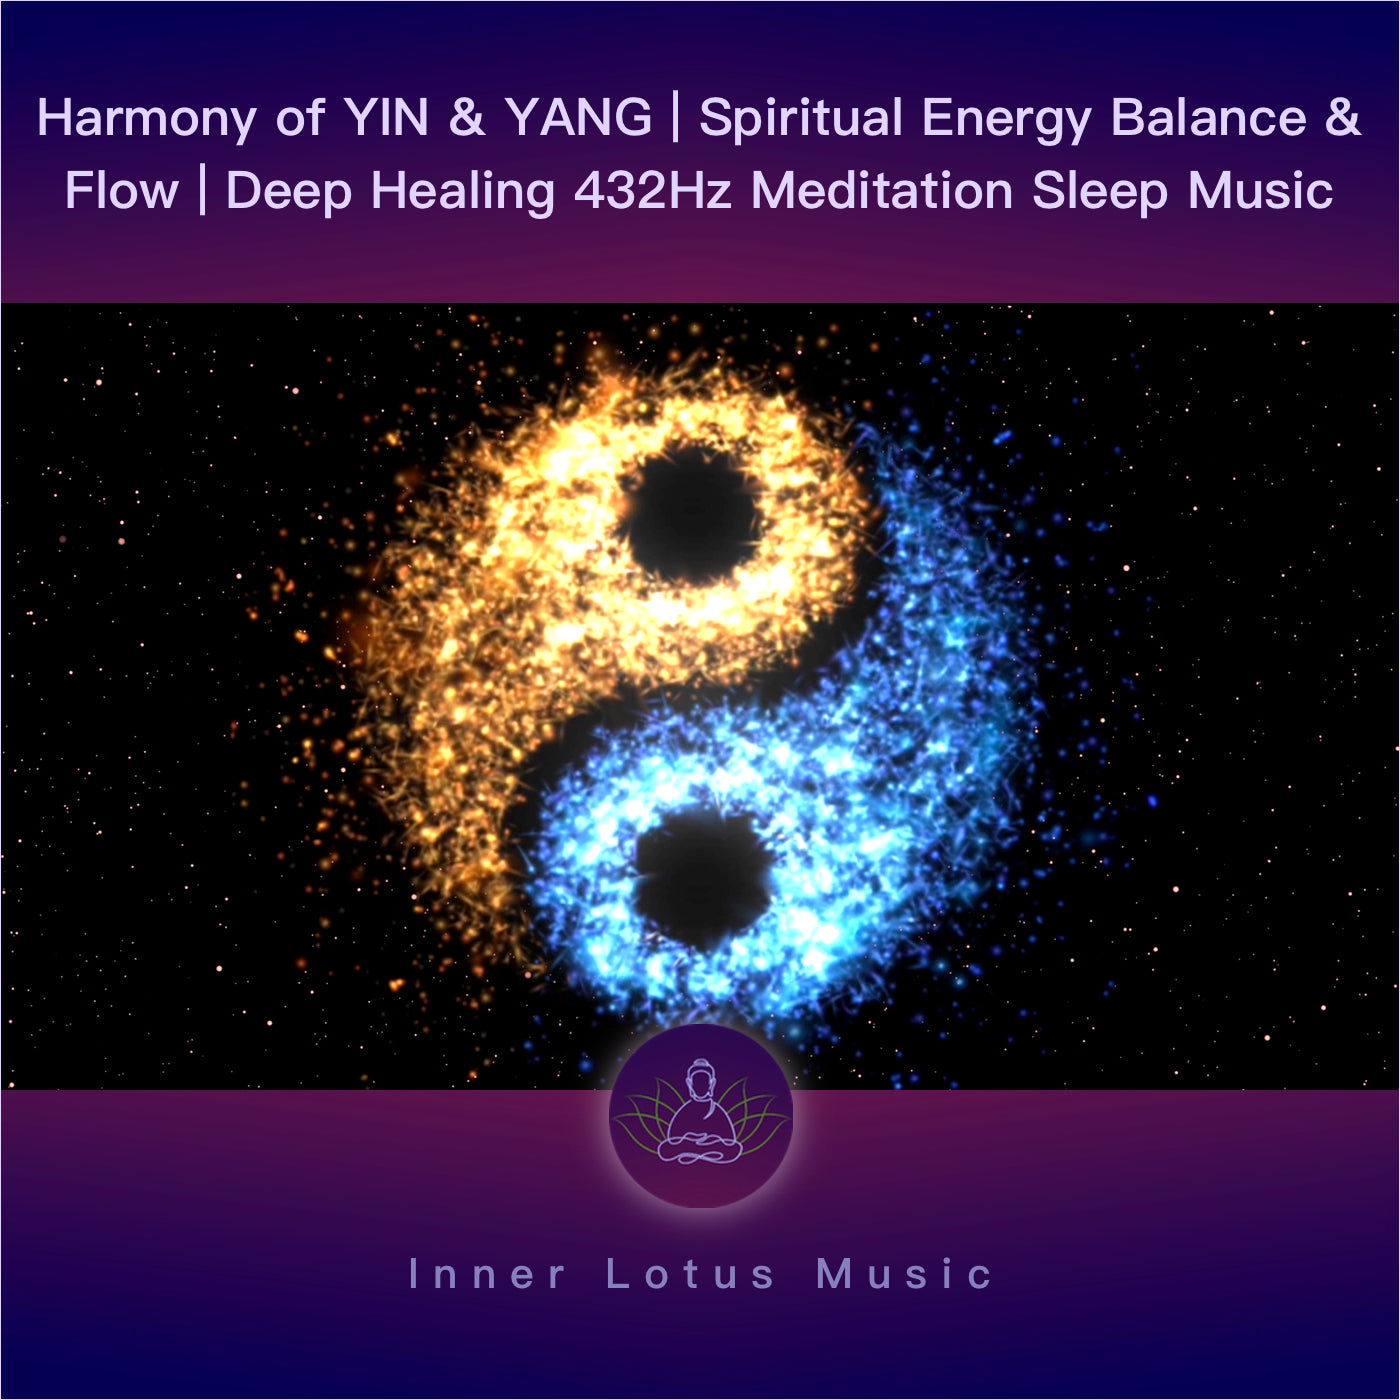 Armonía YIN & YANG | Equilibrio y Flujo de Energía Espiritual | Música Meditación y Sueño 432 Hz